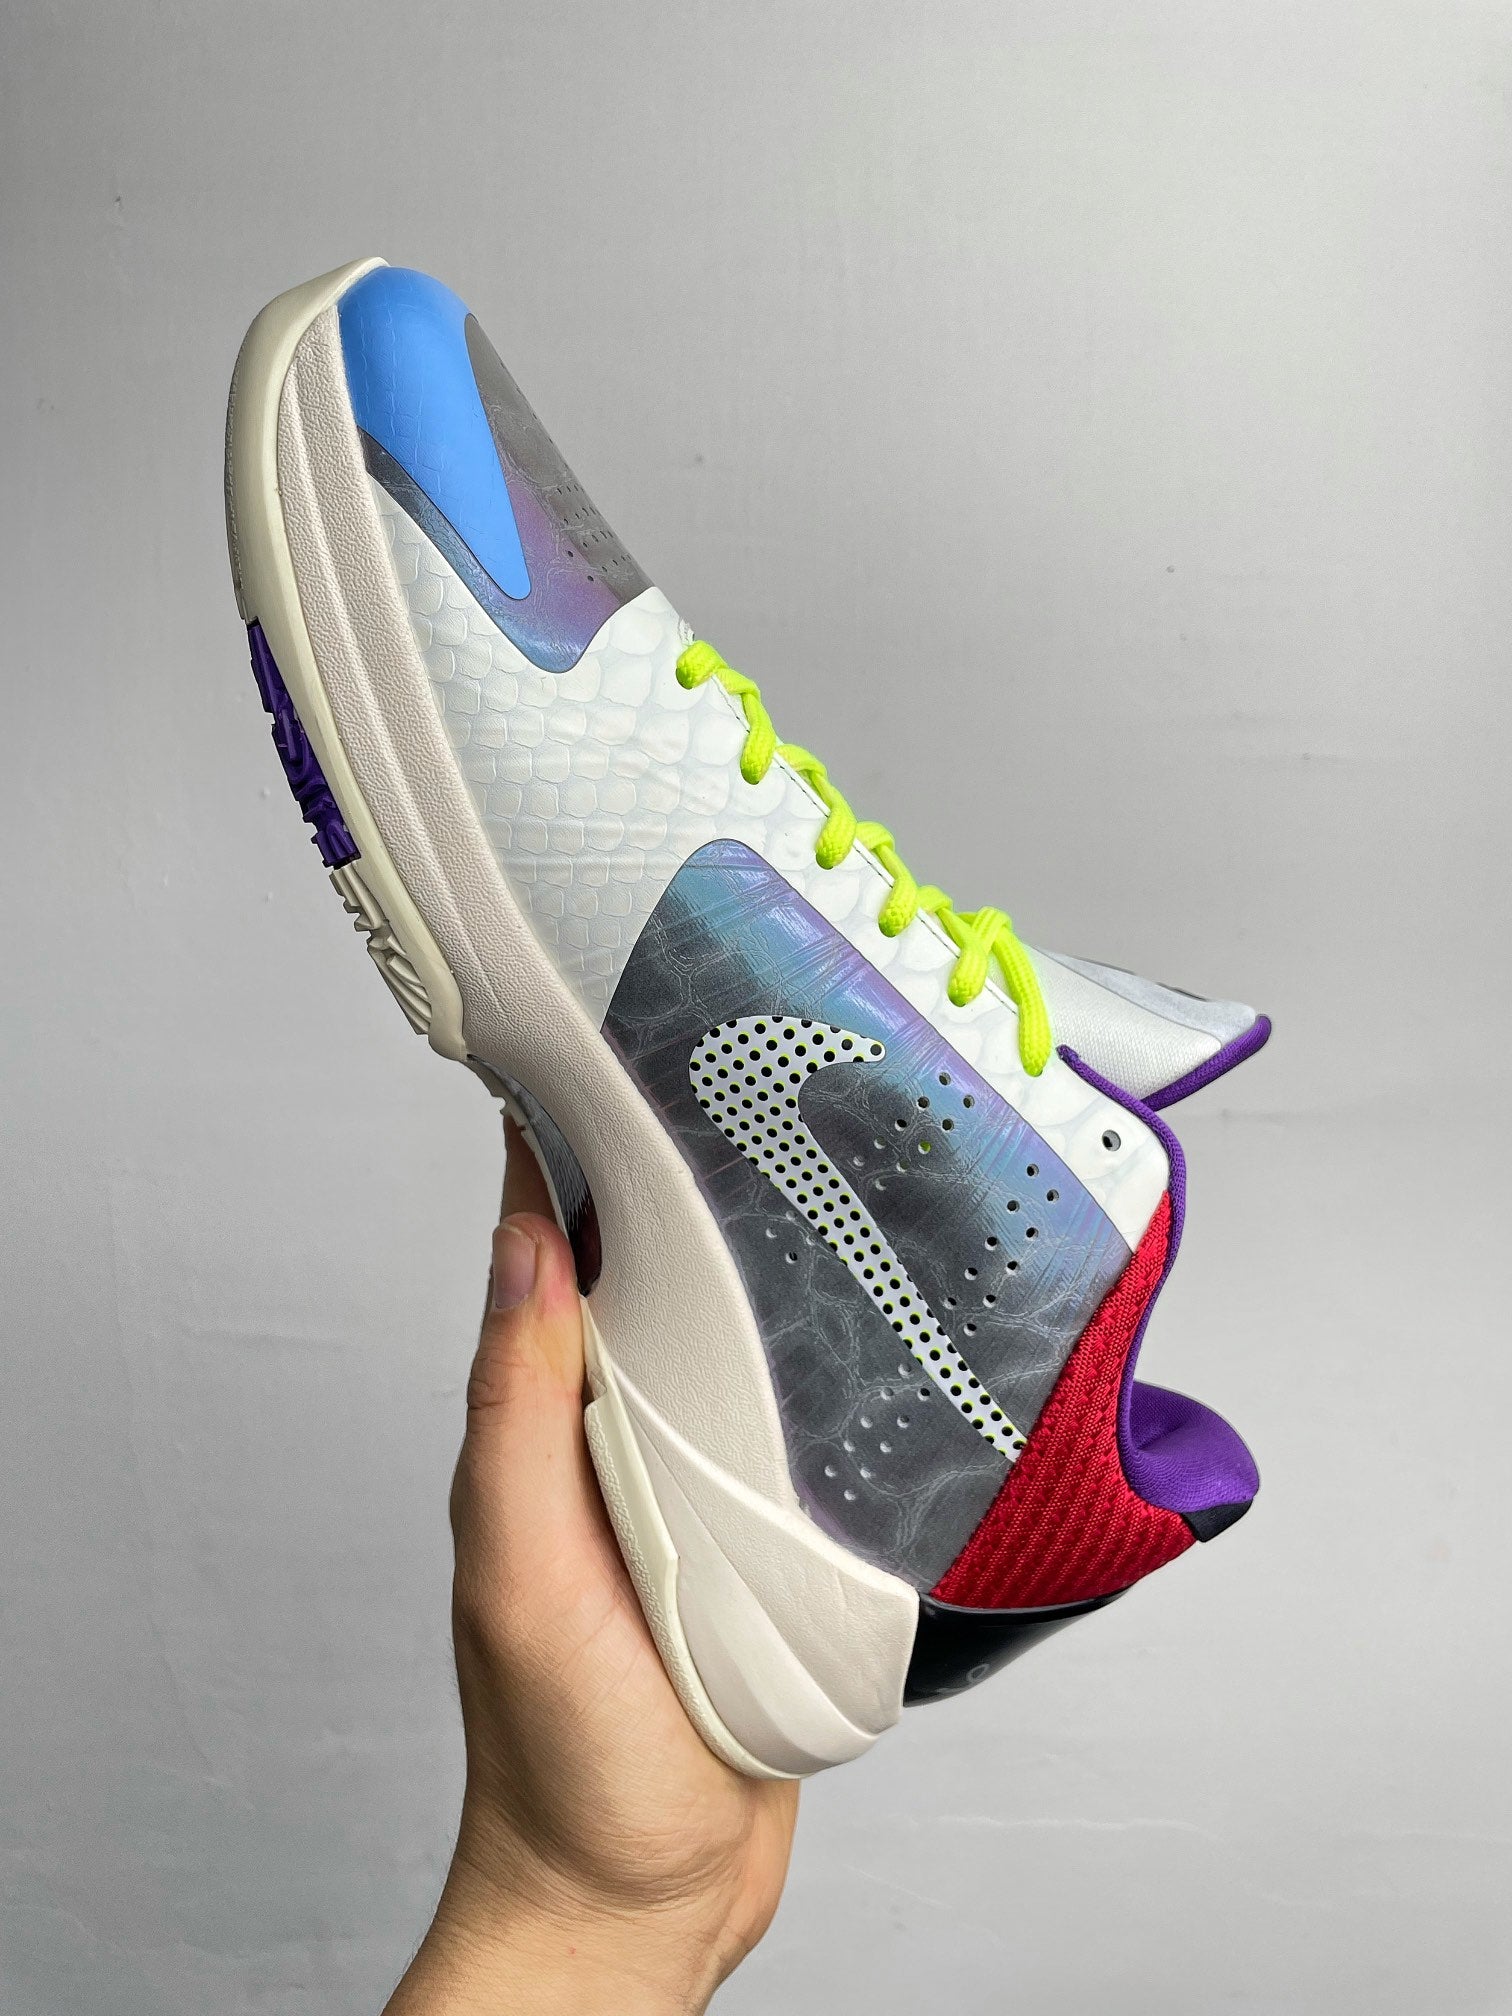 S2 Batch-Nike Zoom Kobe 5 Protro “Stark”